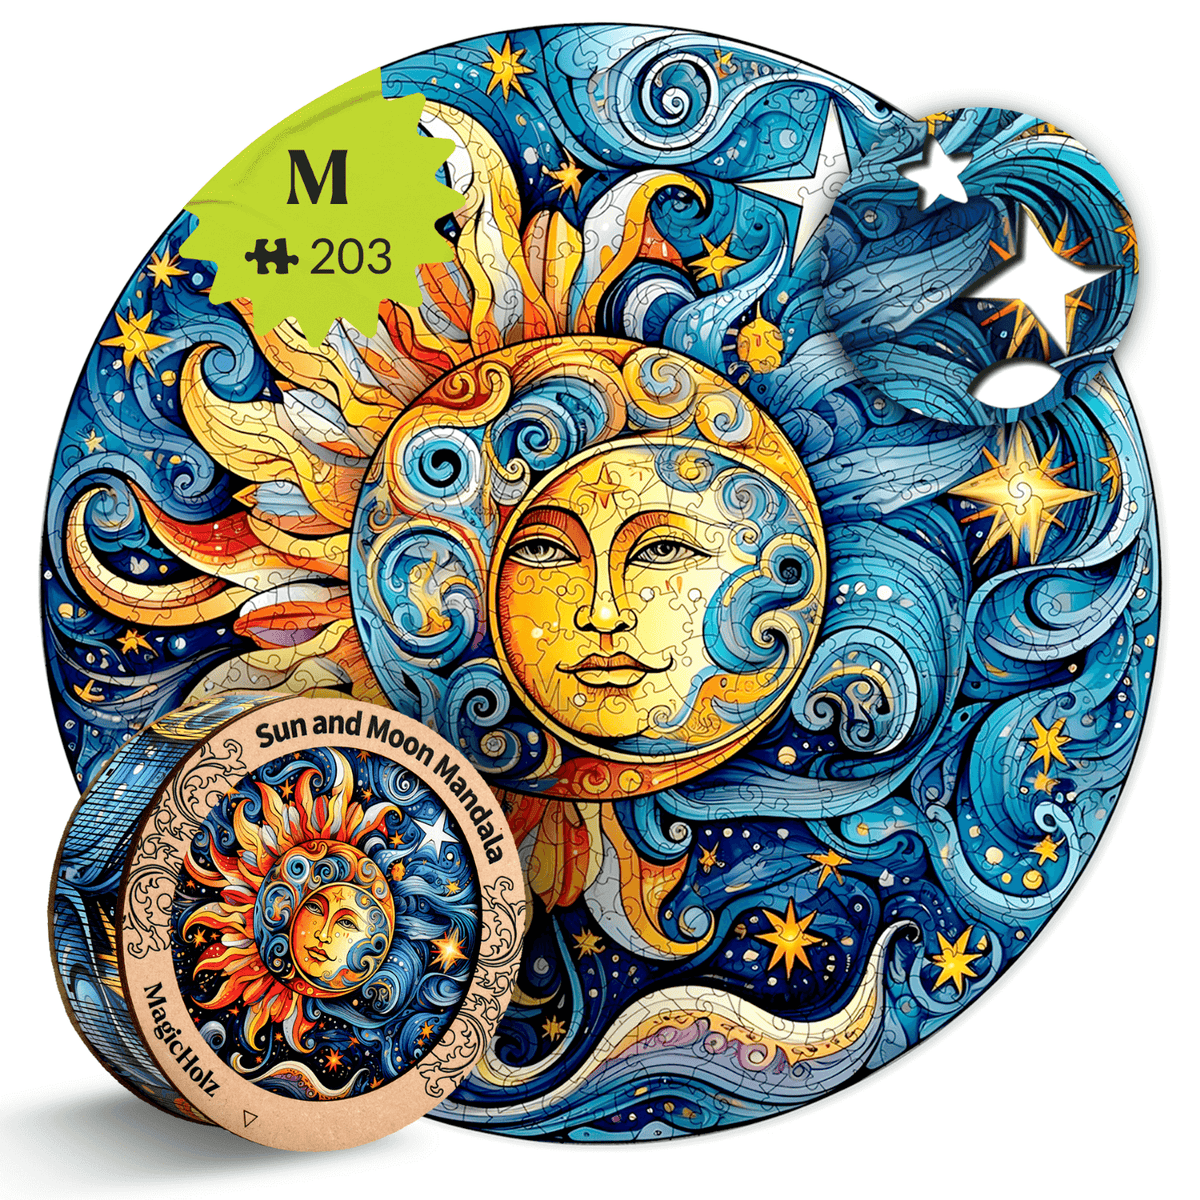 Zon en maan | Mandala houten puzzel-MagicHolz-SunMoonM-0098925395479